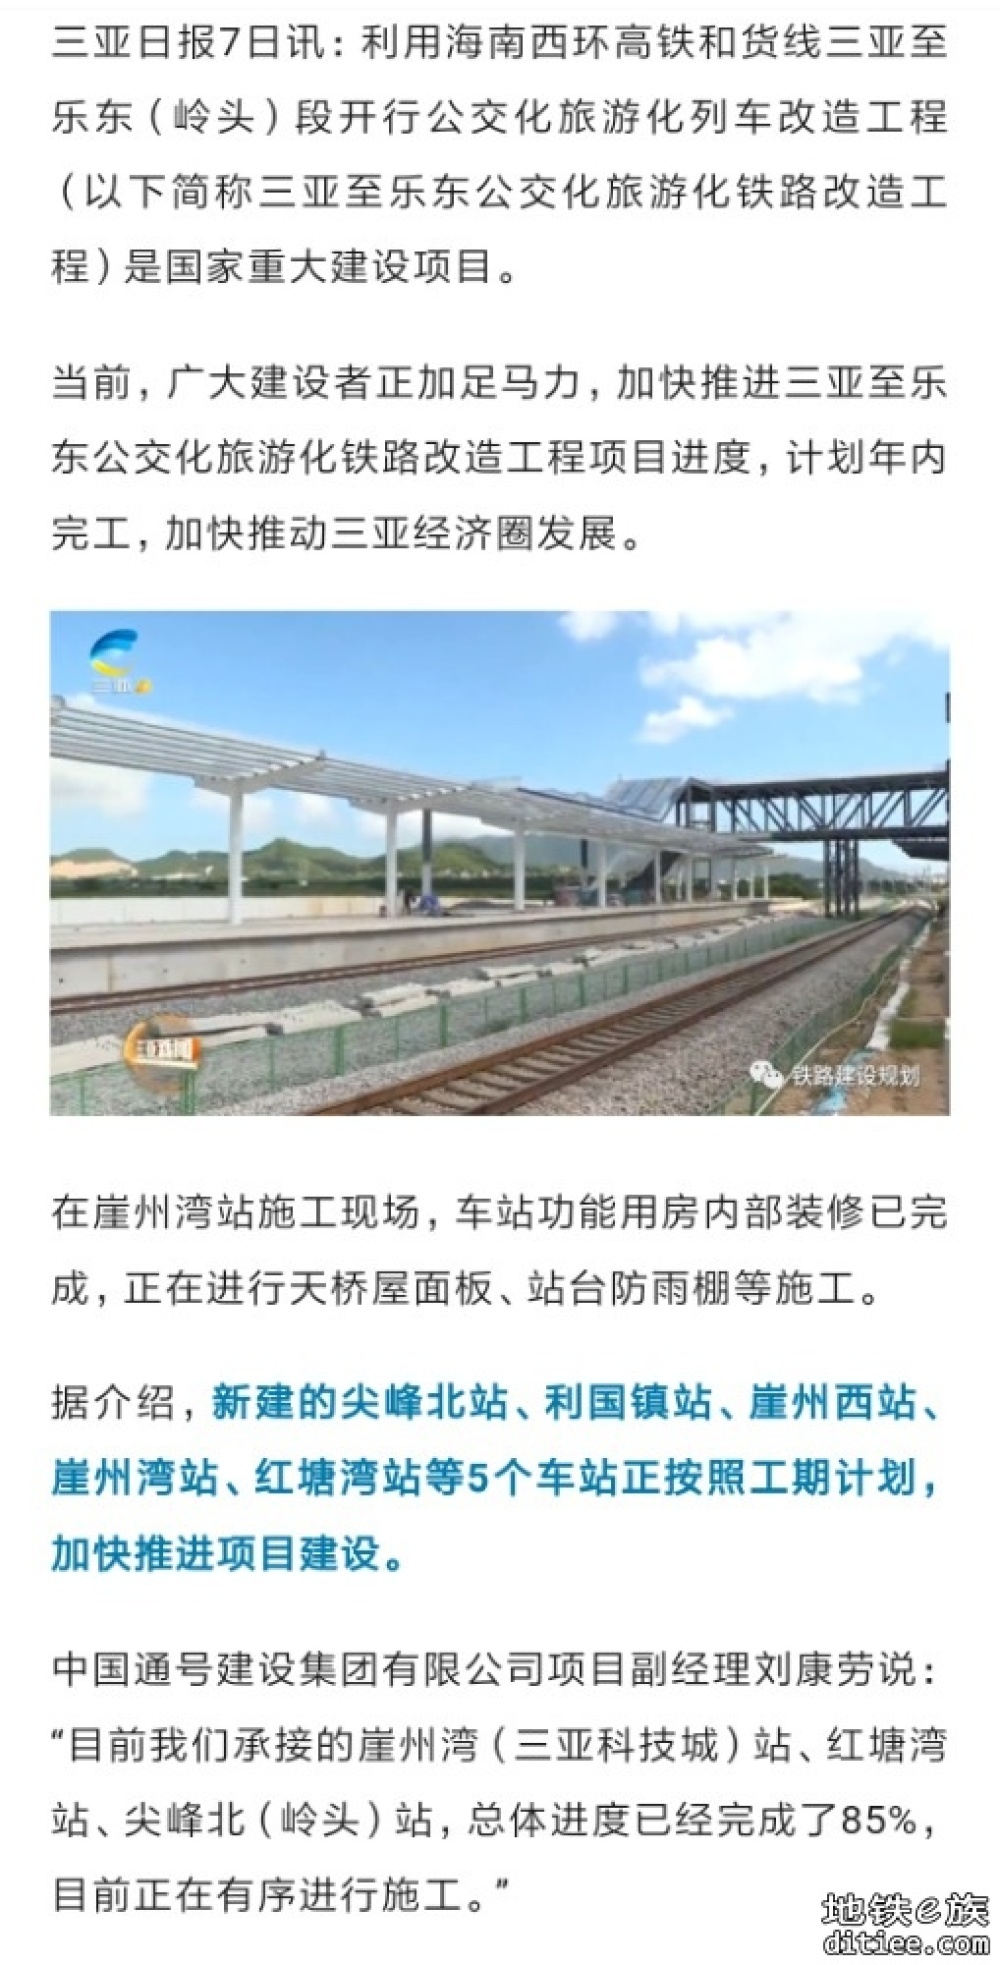 三亚至乐东铁路改造工程将于年内完工